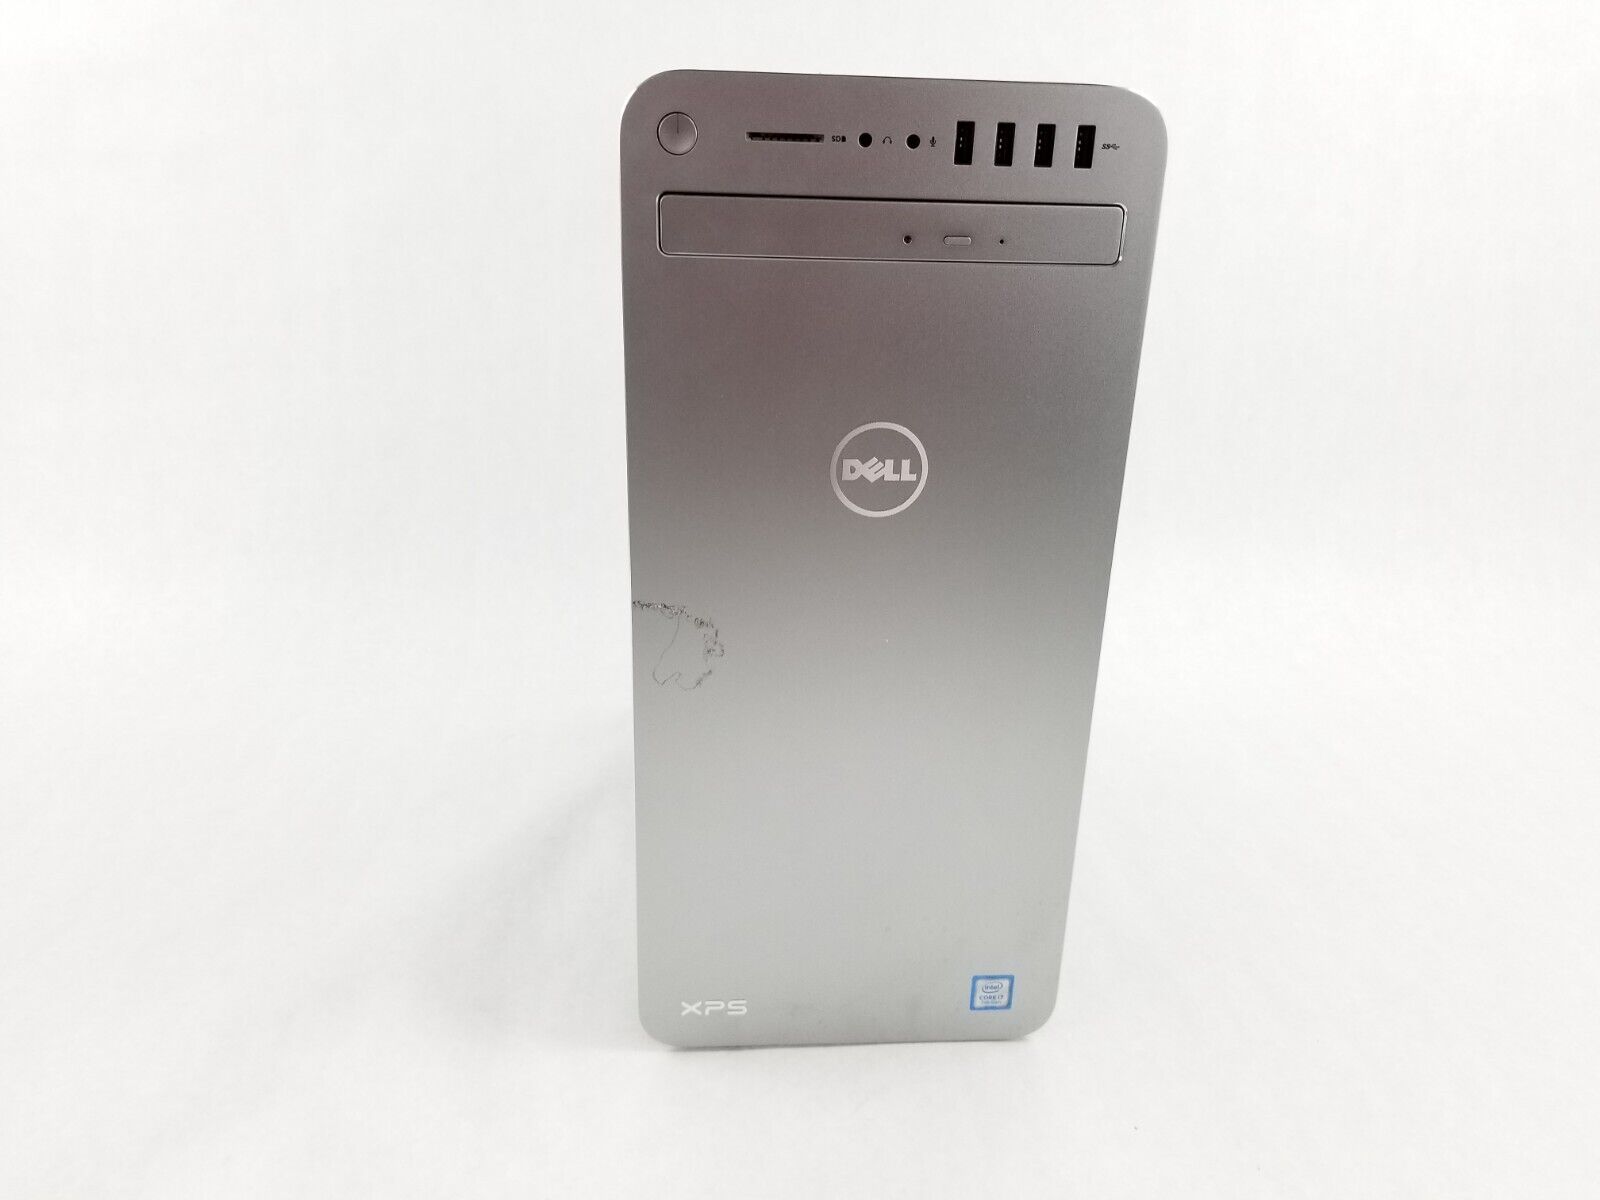 Dell XPS 8920 MT Intel Core i7-7700 3.6GHz 8GB RAM NO HDD NO OS